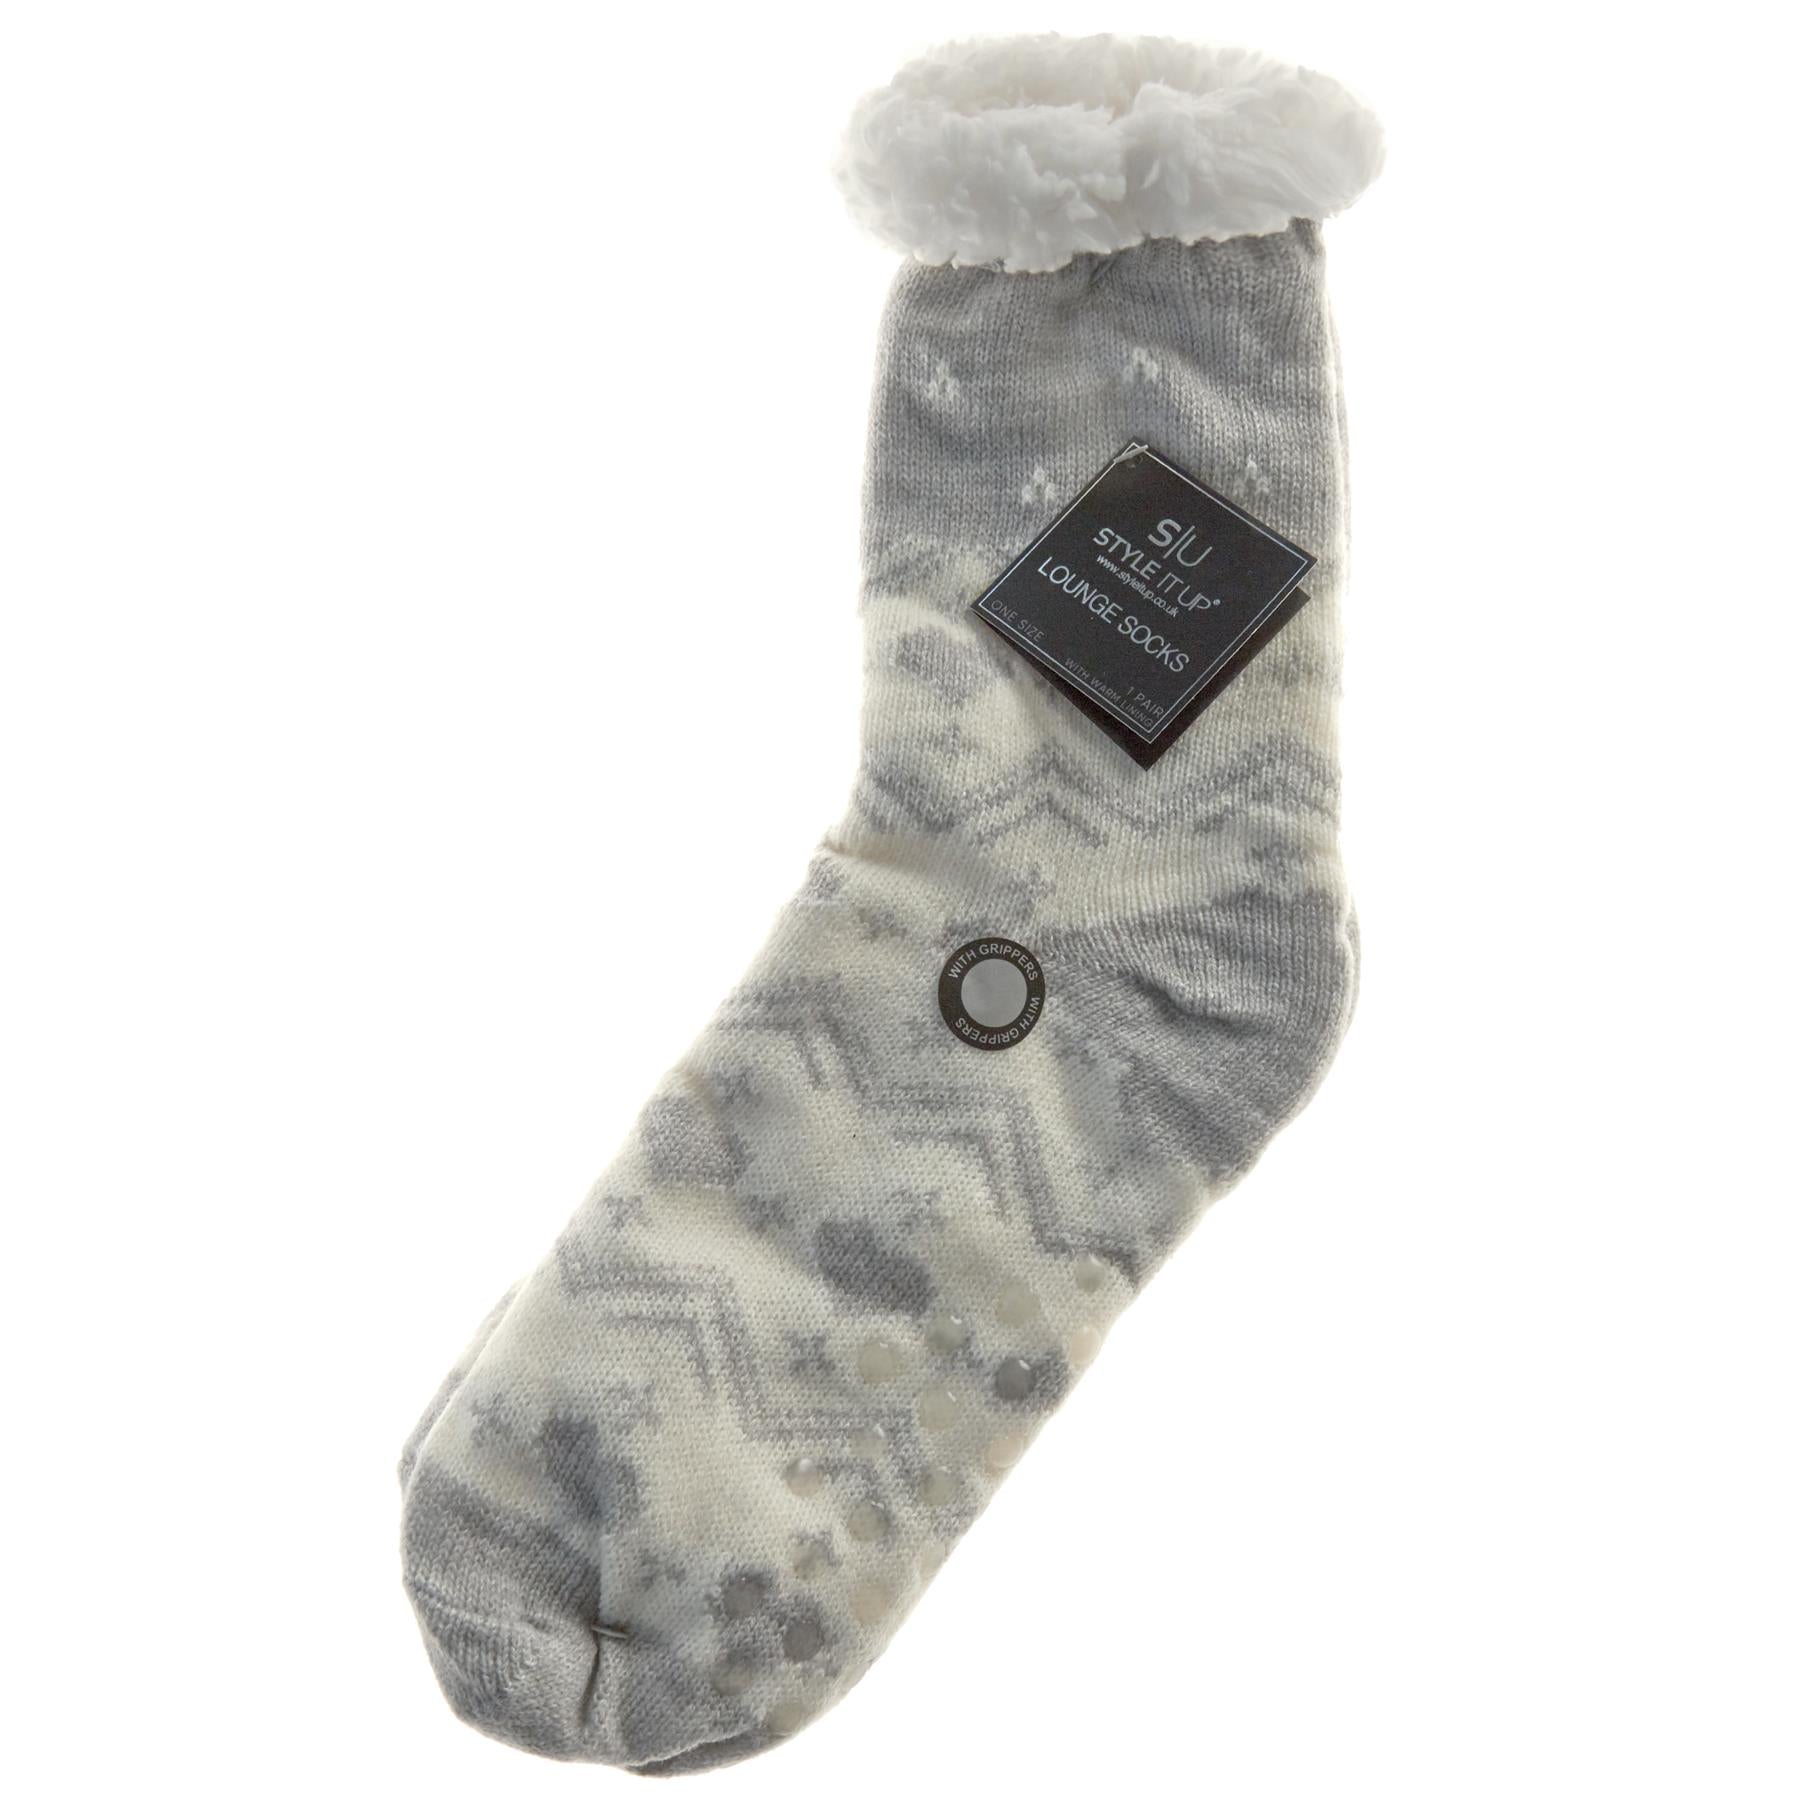 Navy Reindeer 1 Pair Lounge Socks